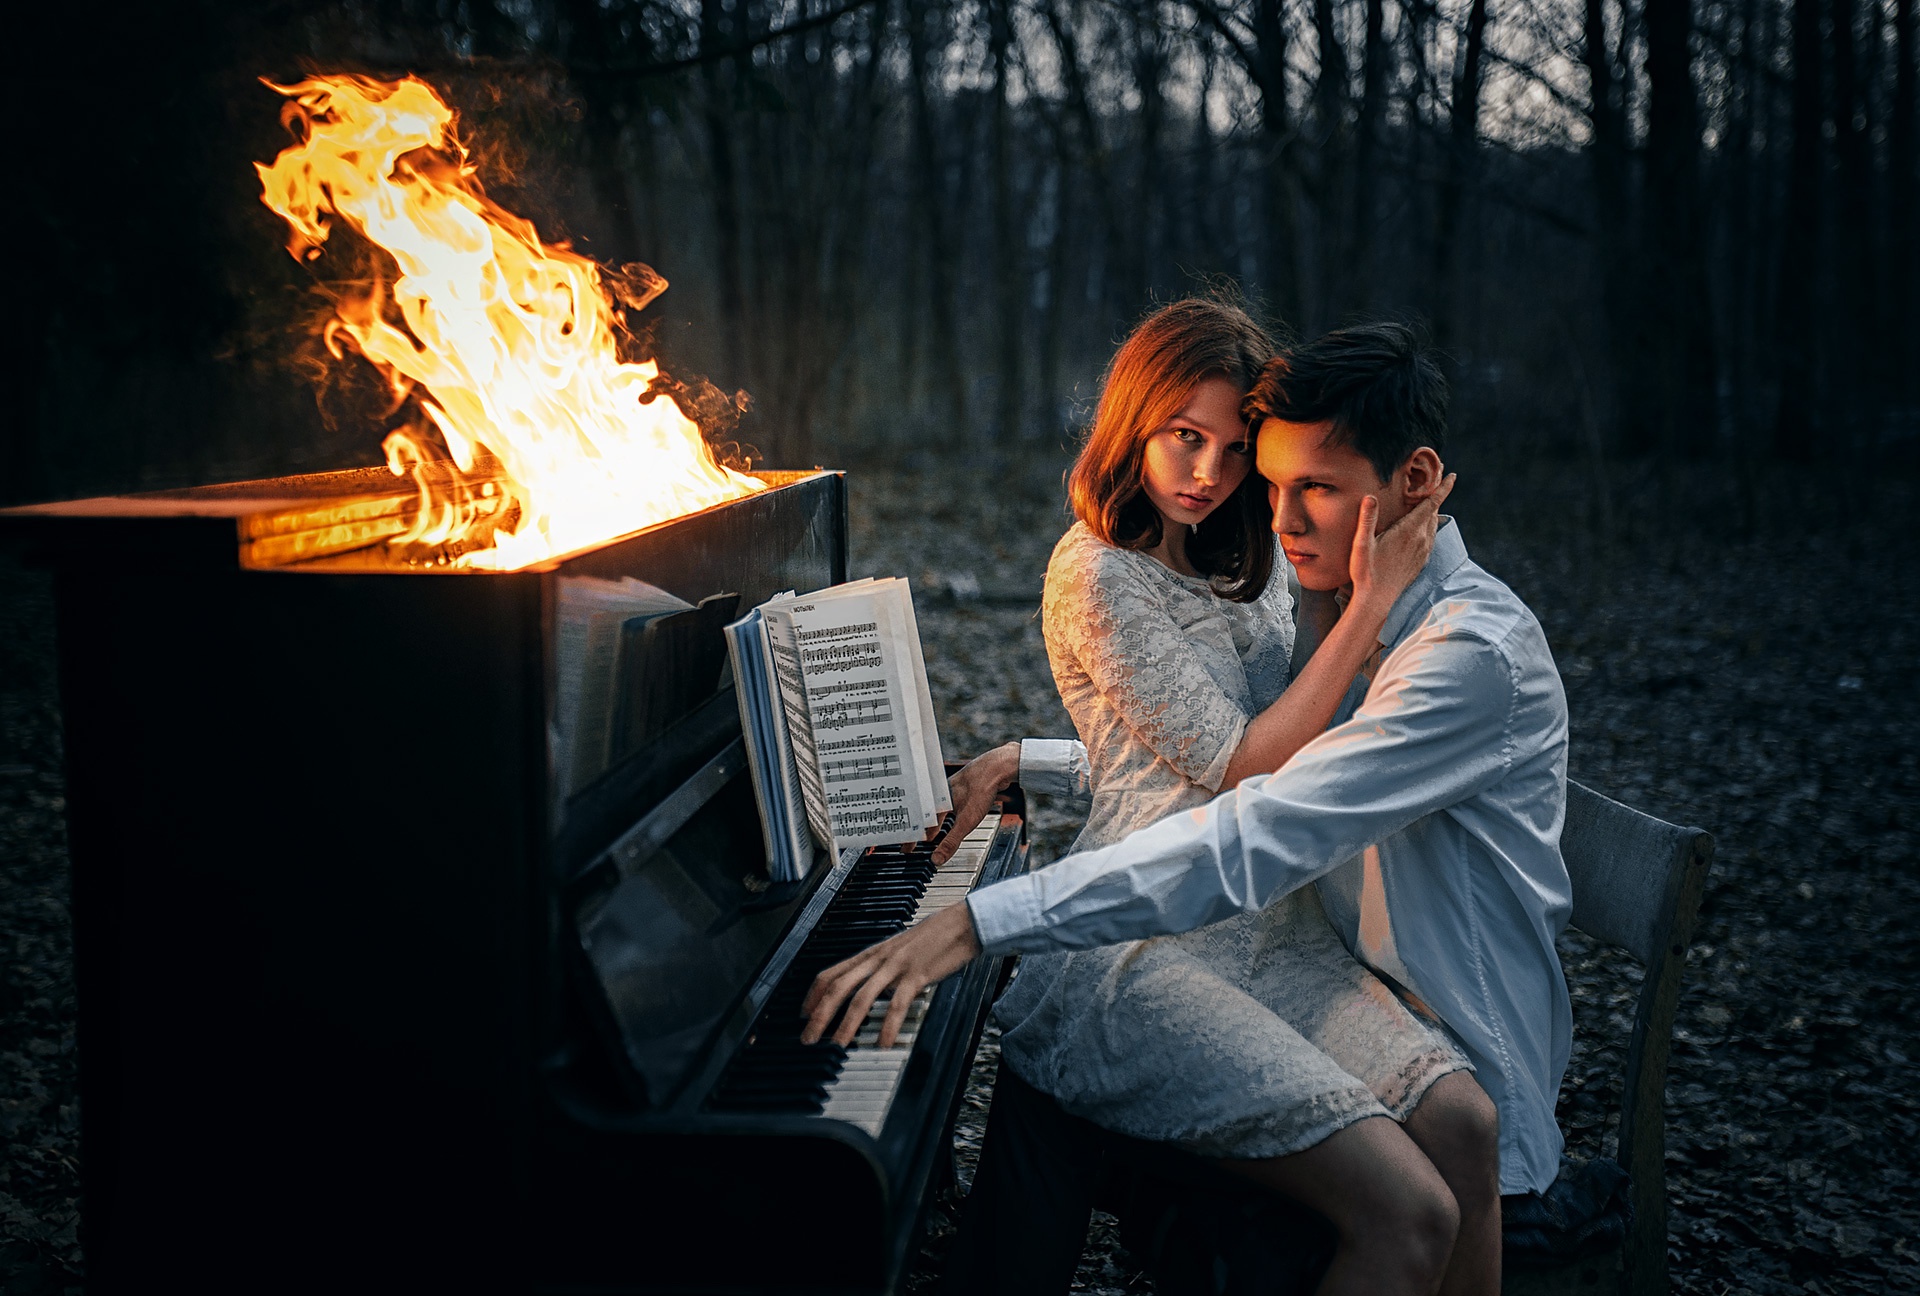 Парень и девушка в огне